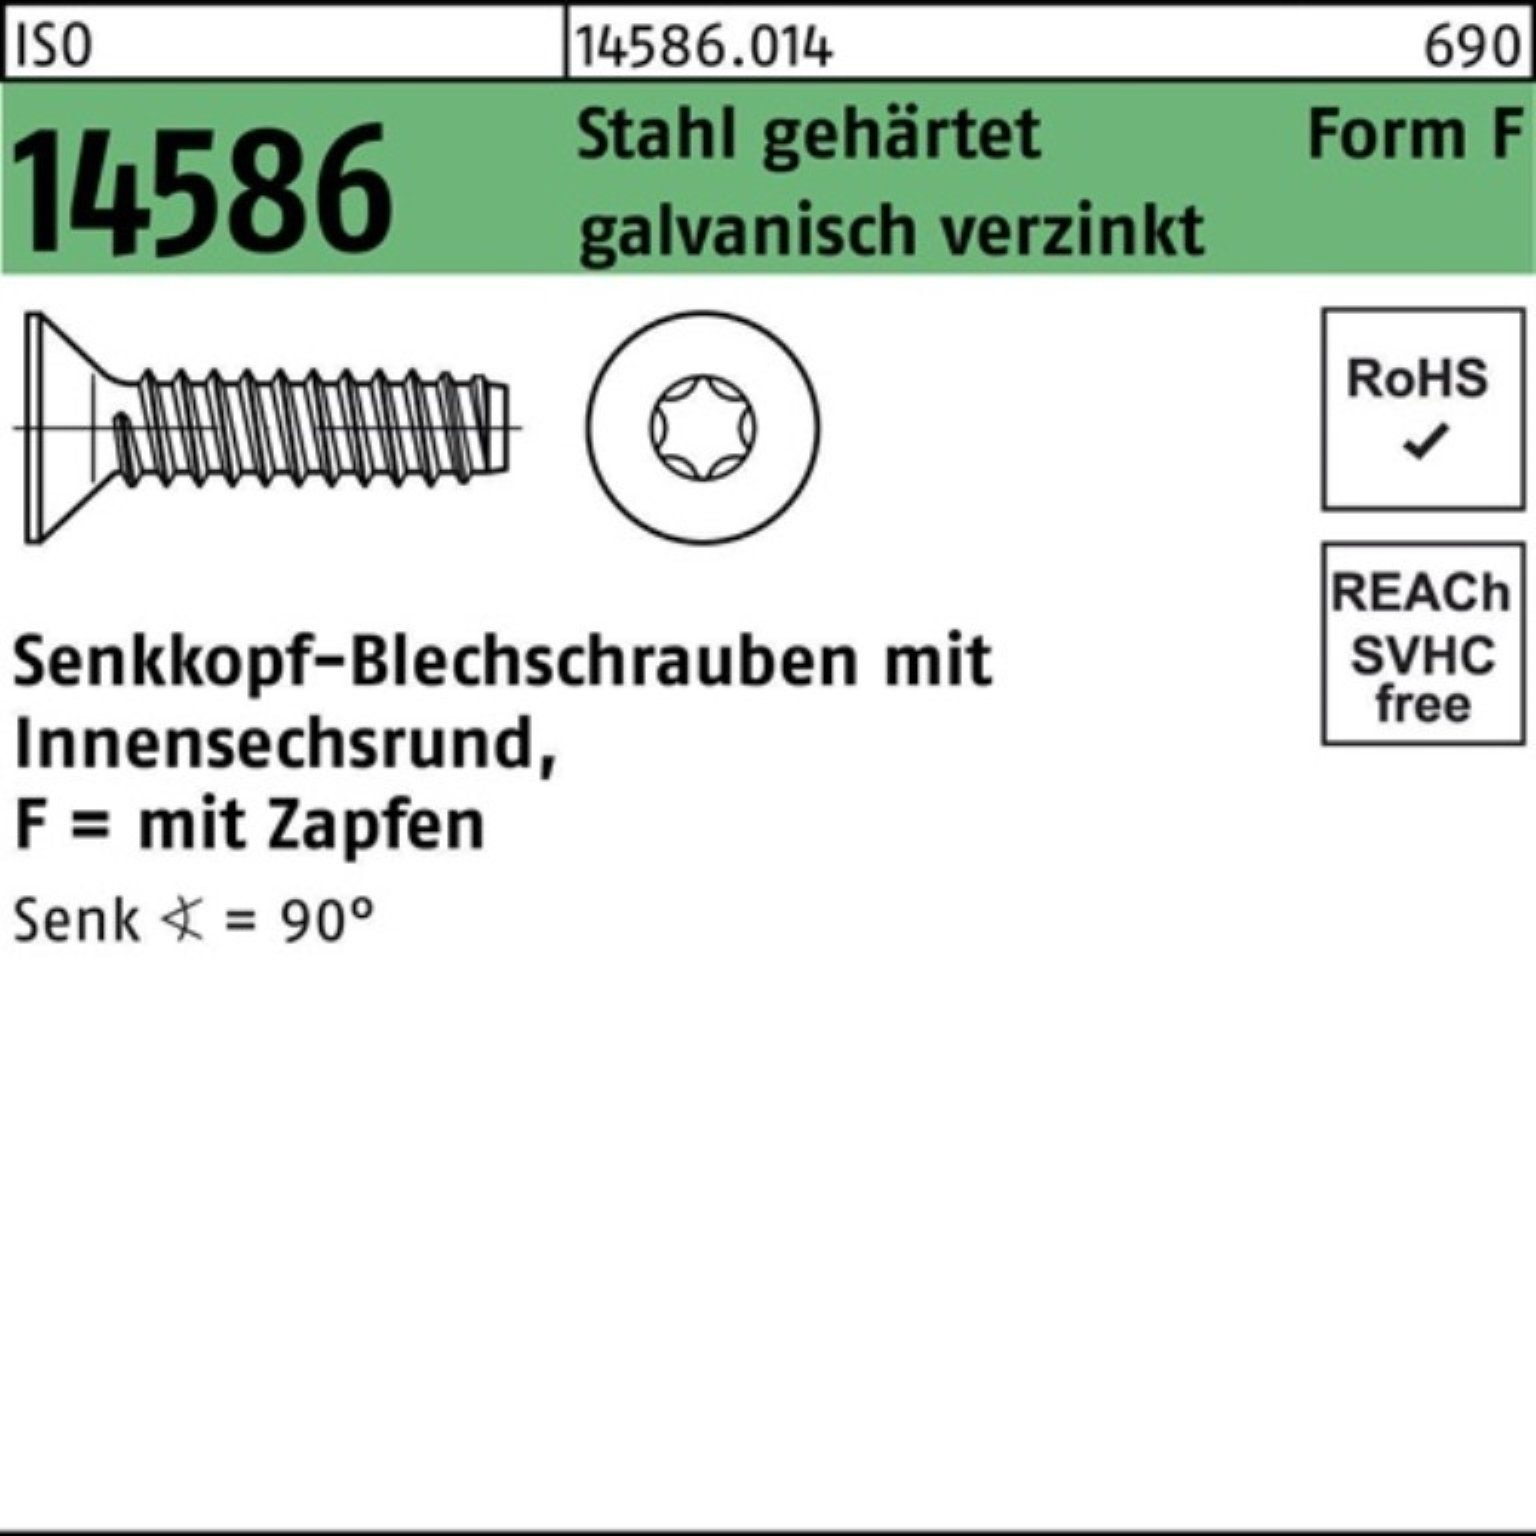 Reyher Schraube 1000er Pack Senkblechschraube ISO -F Stahl geh ISR/Zapfen 3,5x13 14586